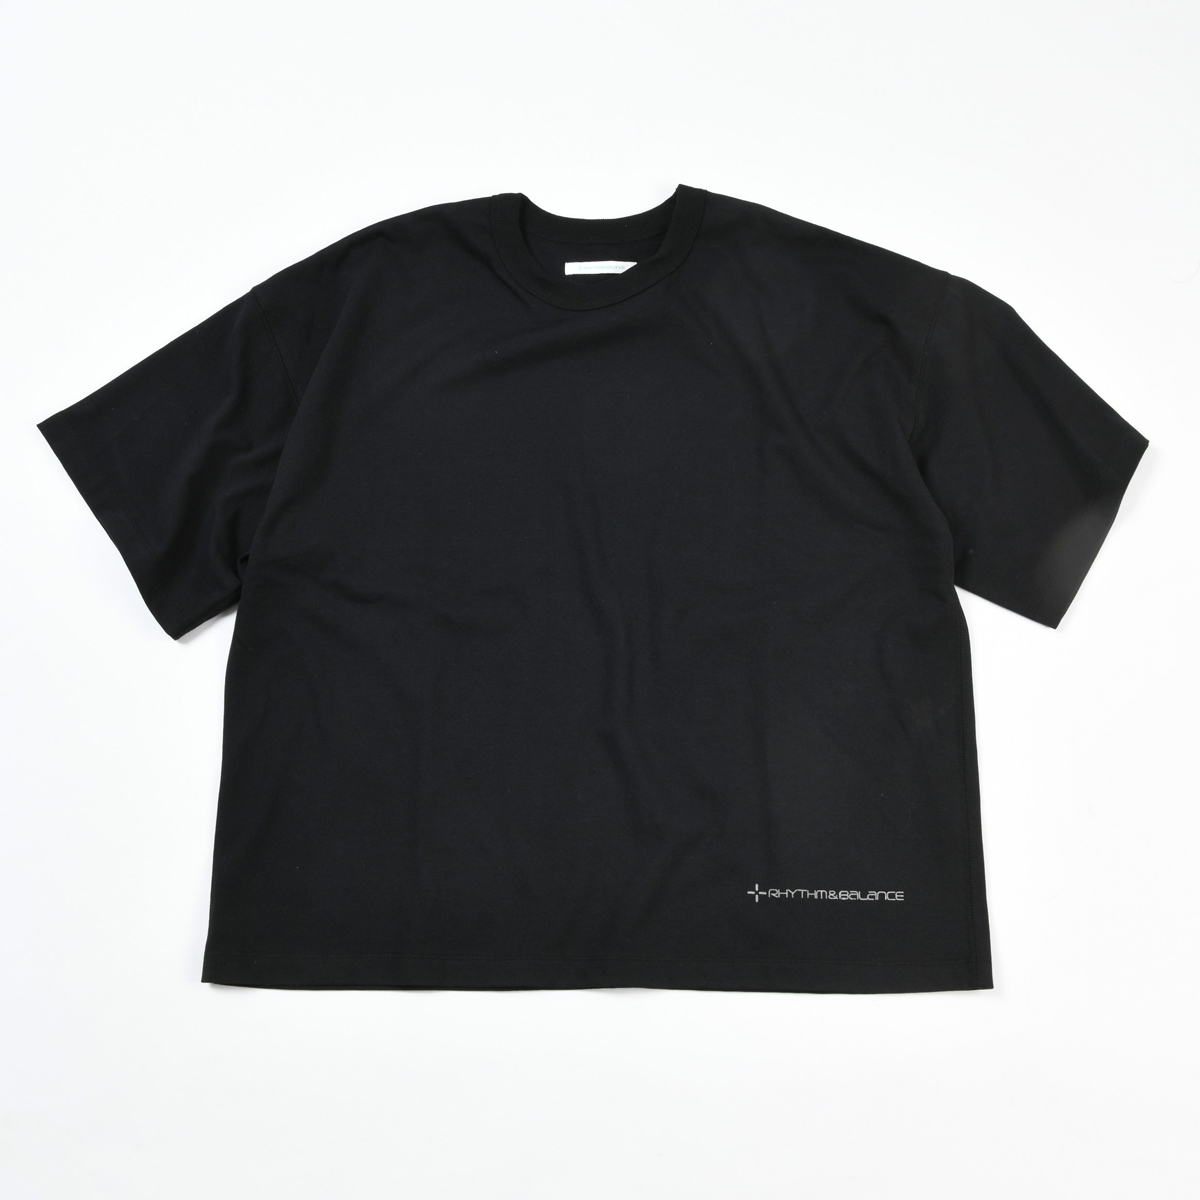 ユニセックスグラフィックTシャツ ブラック S